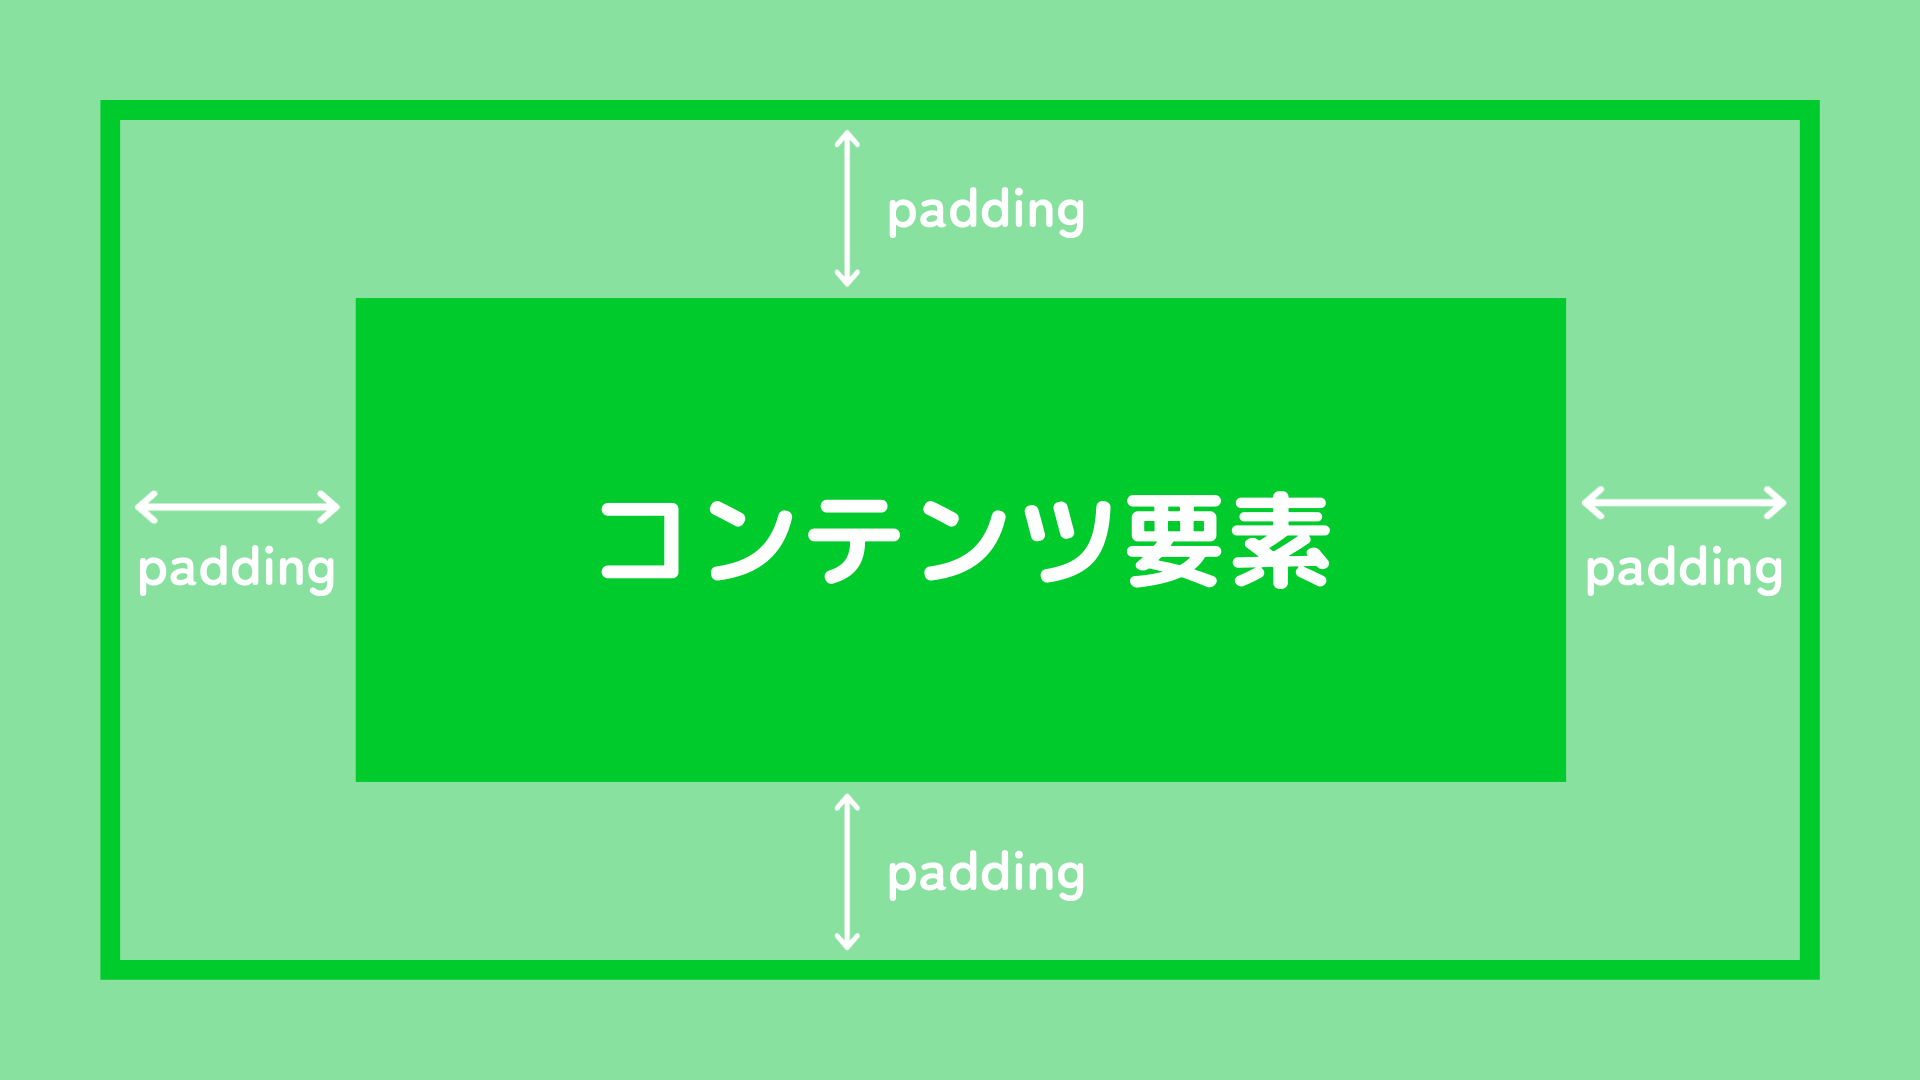 paddingの例